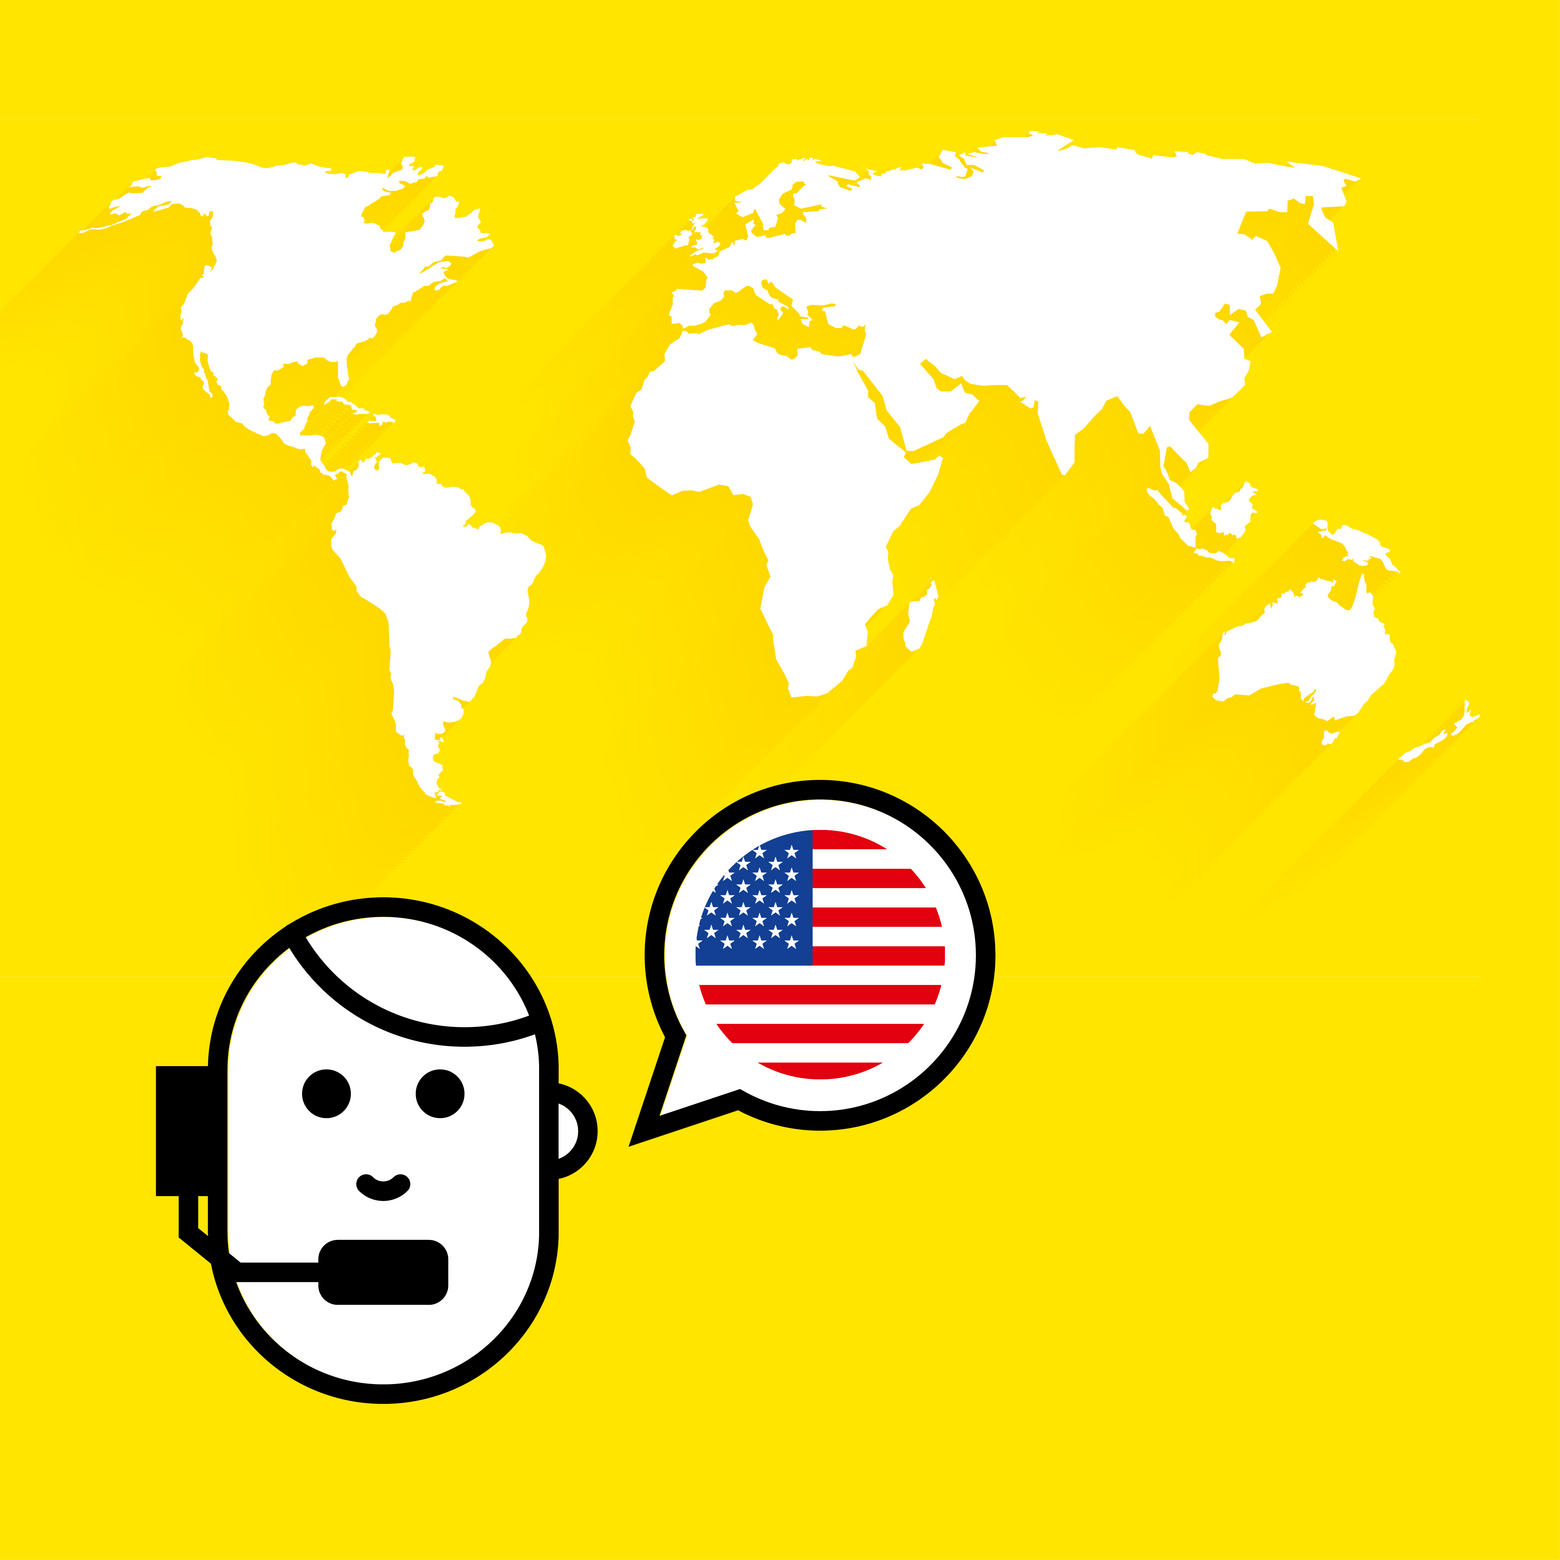 Grafik, die auf gelbem Hintergrund die Kontinente zeigt. Im Vordergrund ist das stilisierte Gesicht einer Person zu sehen, die ein Headset trägt und von der eine Sprechblase abgeht, in der sich eine USA-Flagge befindet.